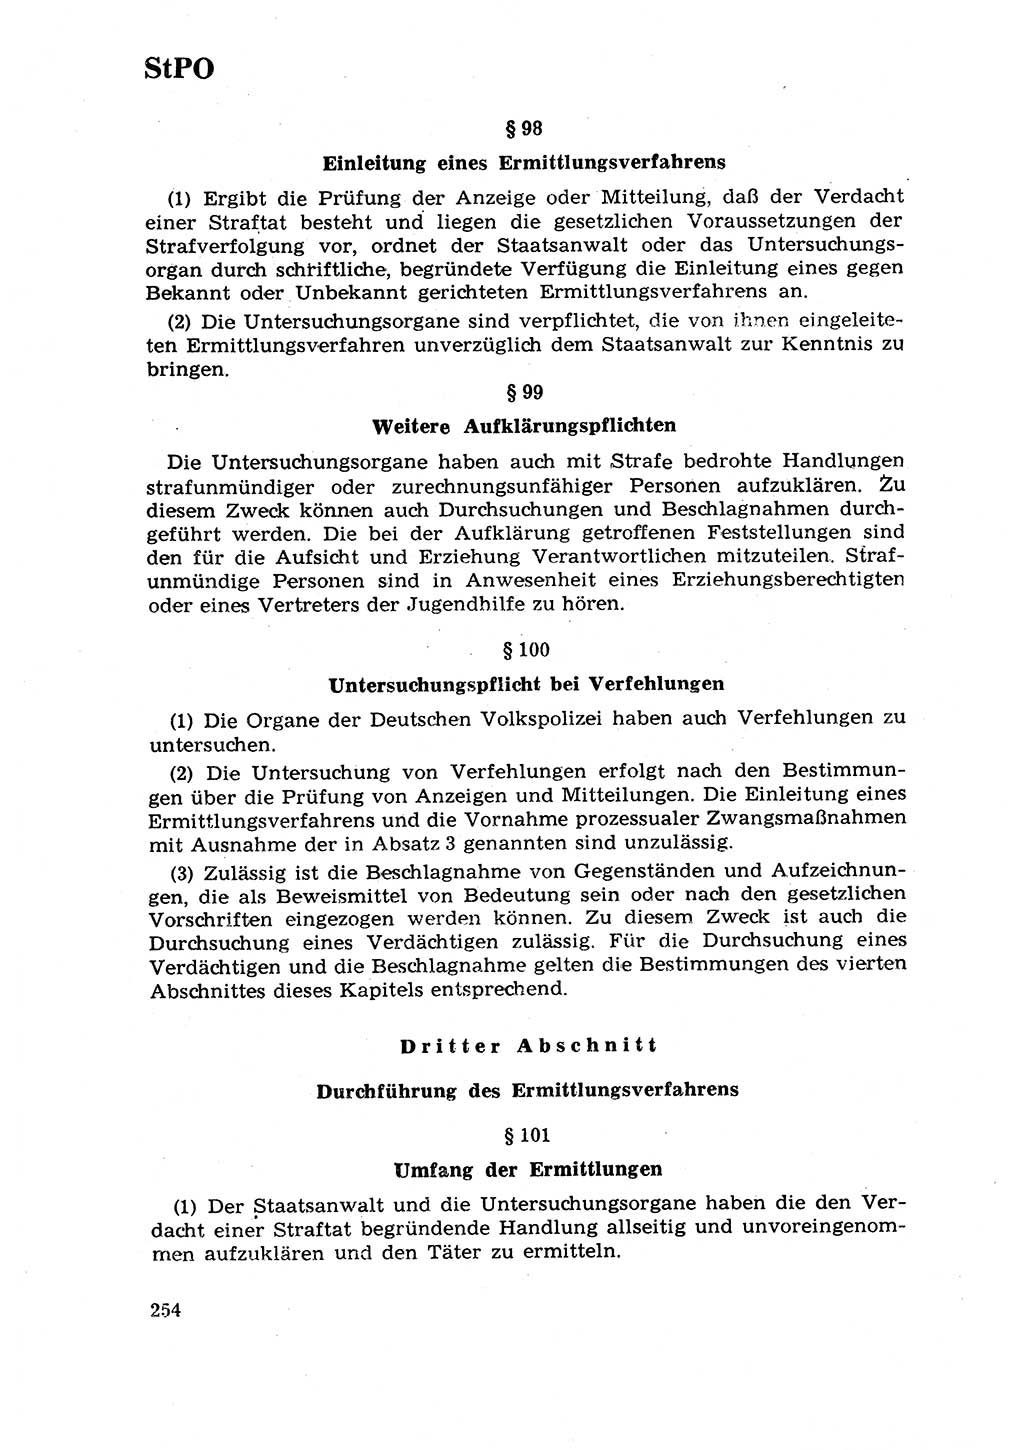 Strafrecht [Deutsche Demokratische Republik (DDR)] 1968, Seite 254 (Strafr. DDR 1968, S. 254)